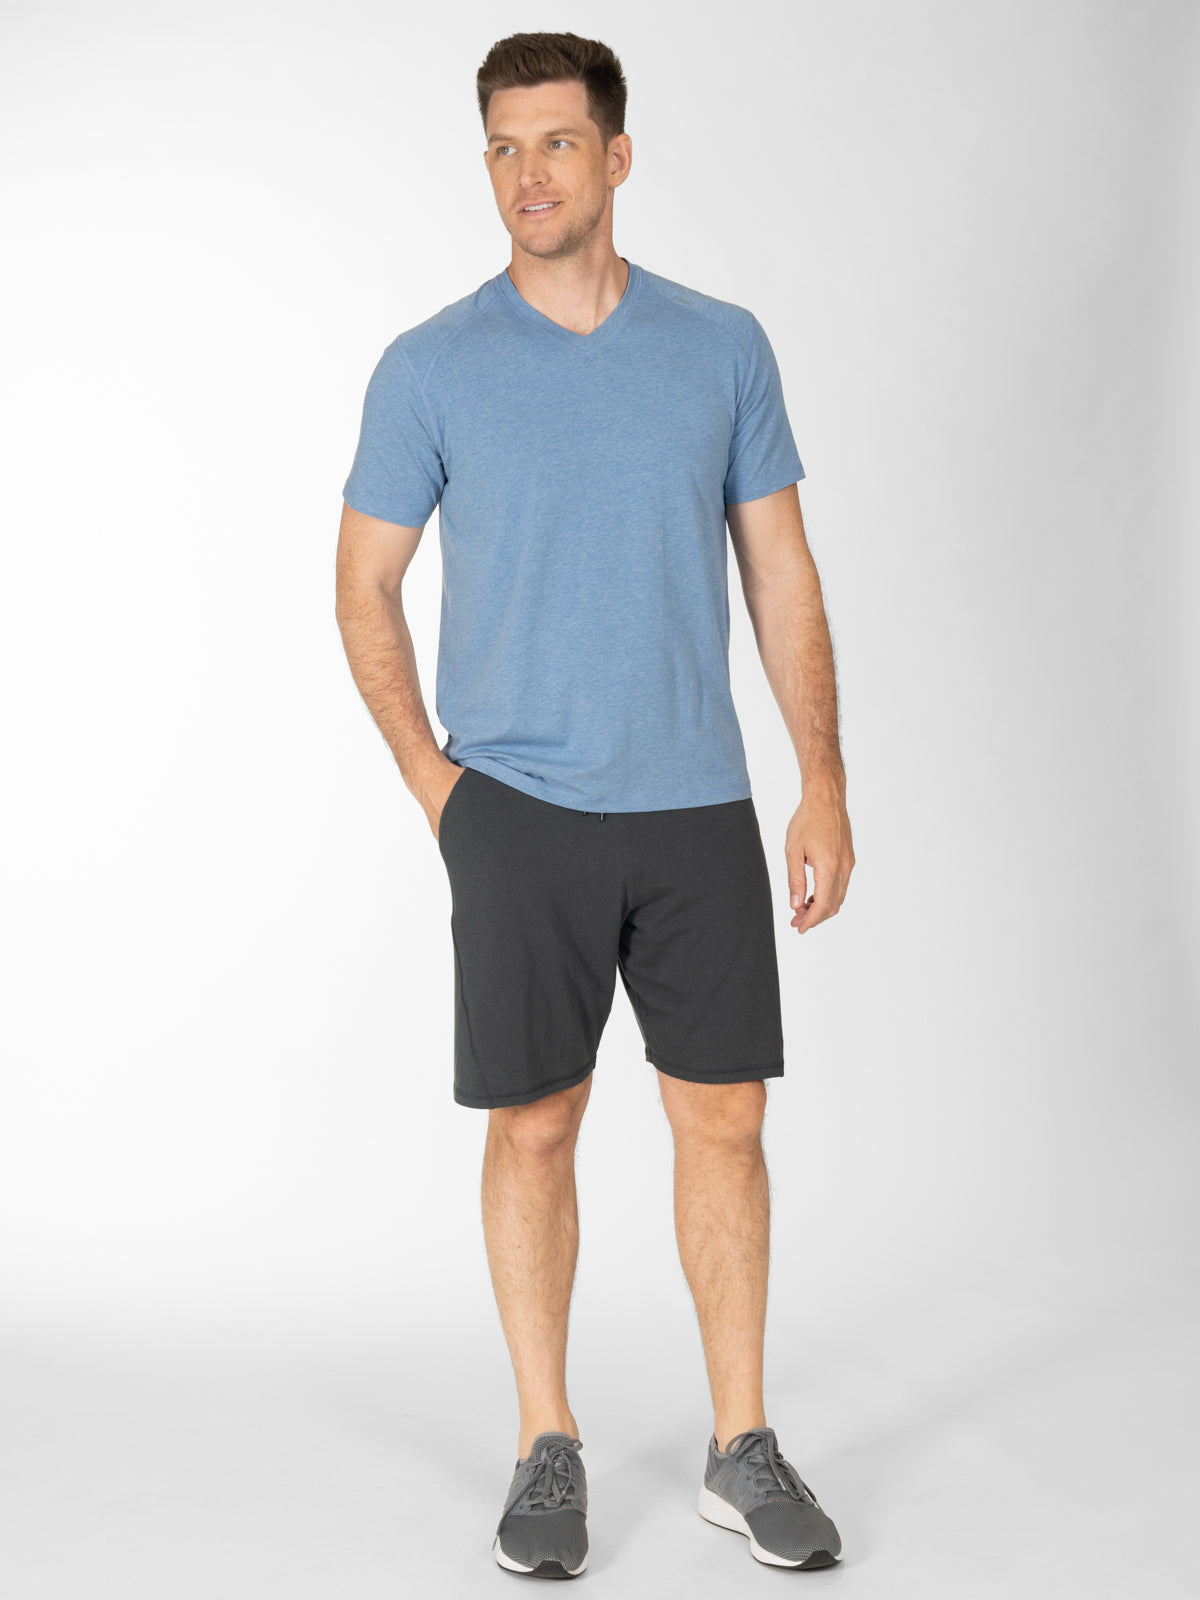 Carrollton Fitness T-Shirt - Mini Stripe – tasc Performance